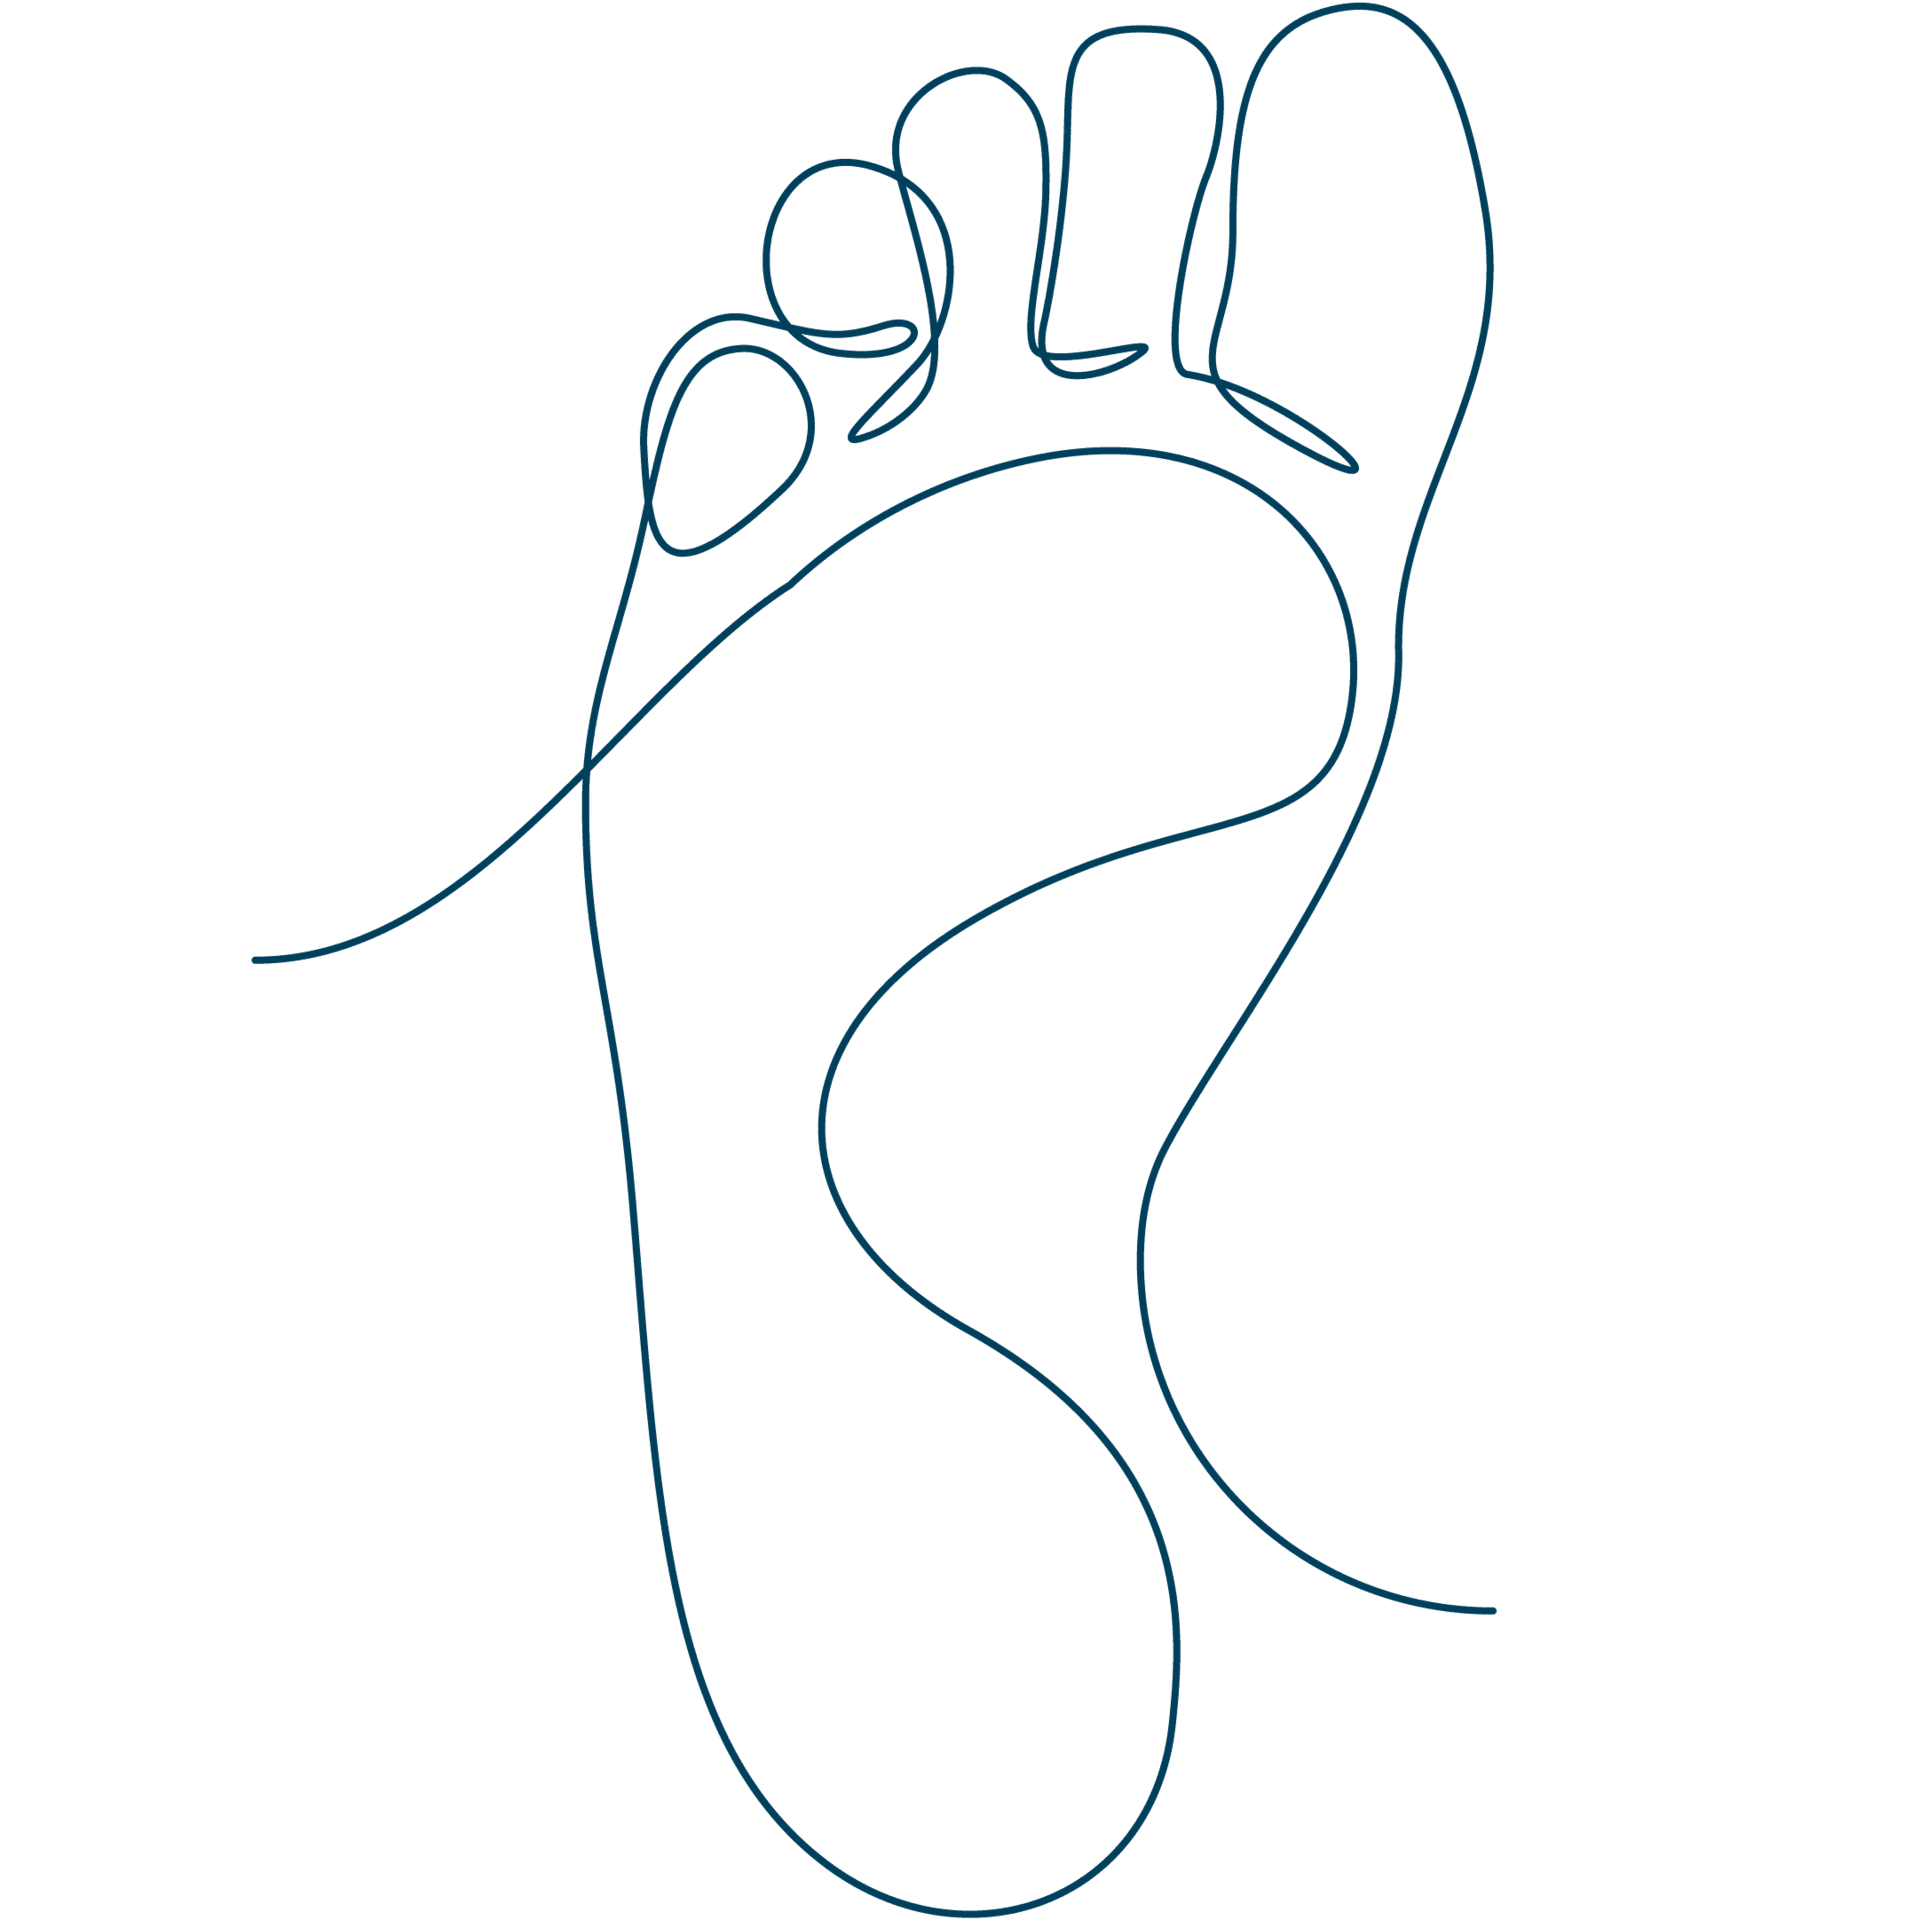 Diese Line-Art-Zeichnung eines Fußes bildet den Link zu den Sixtus Fuß-Produkten.